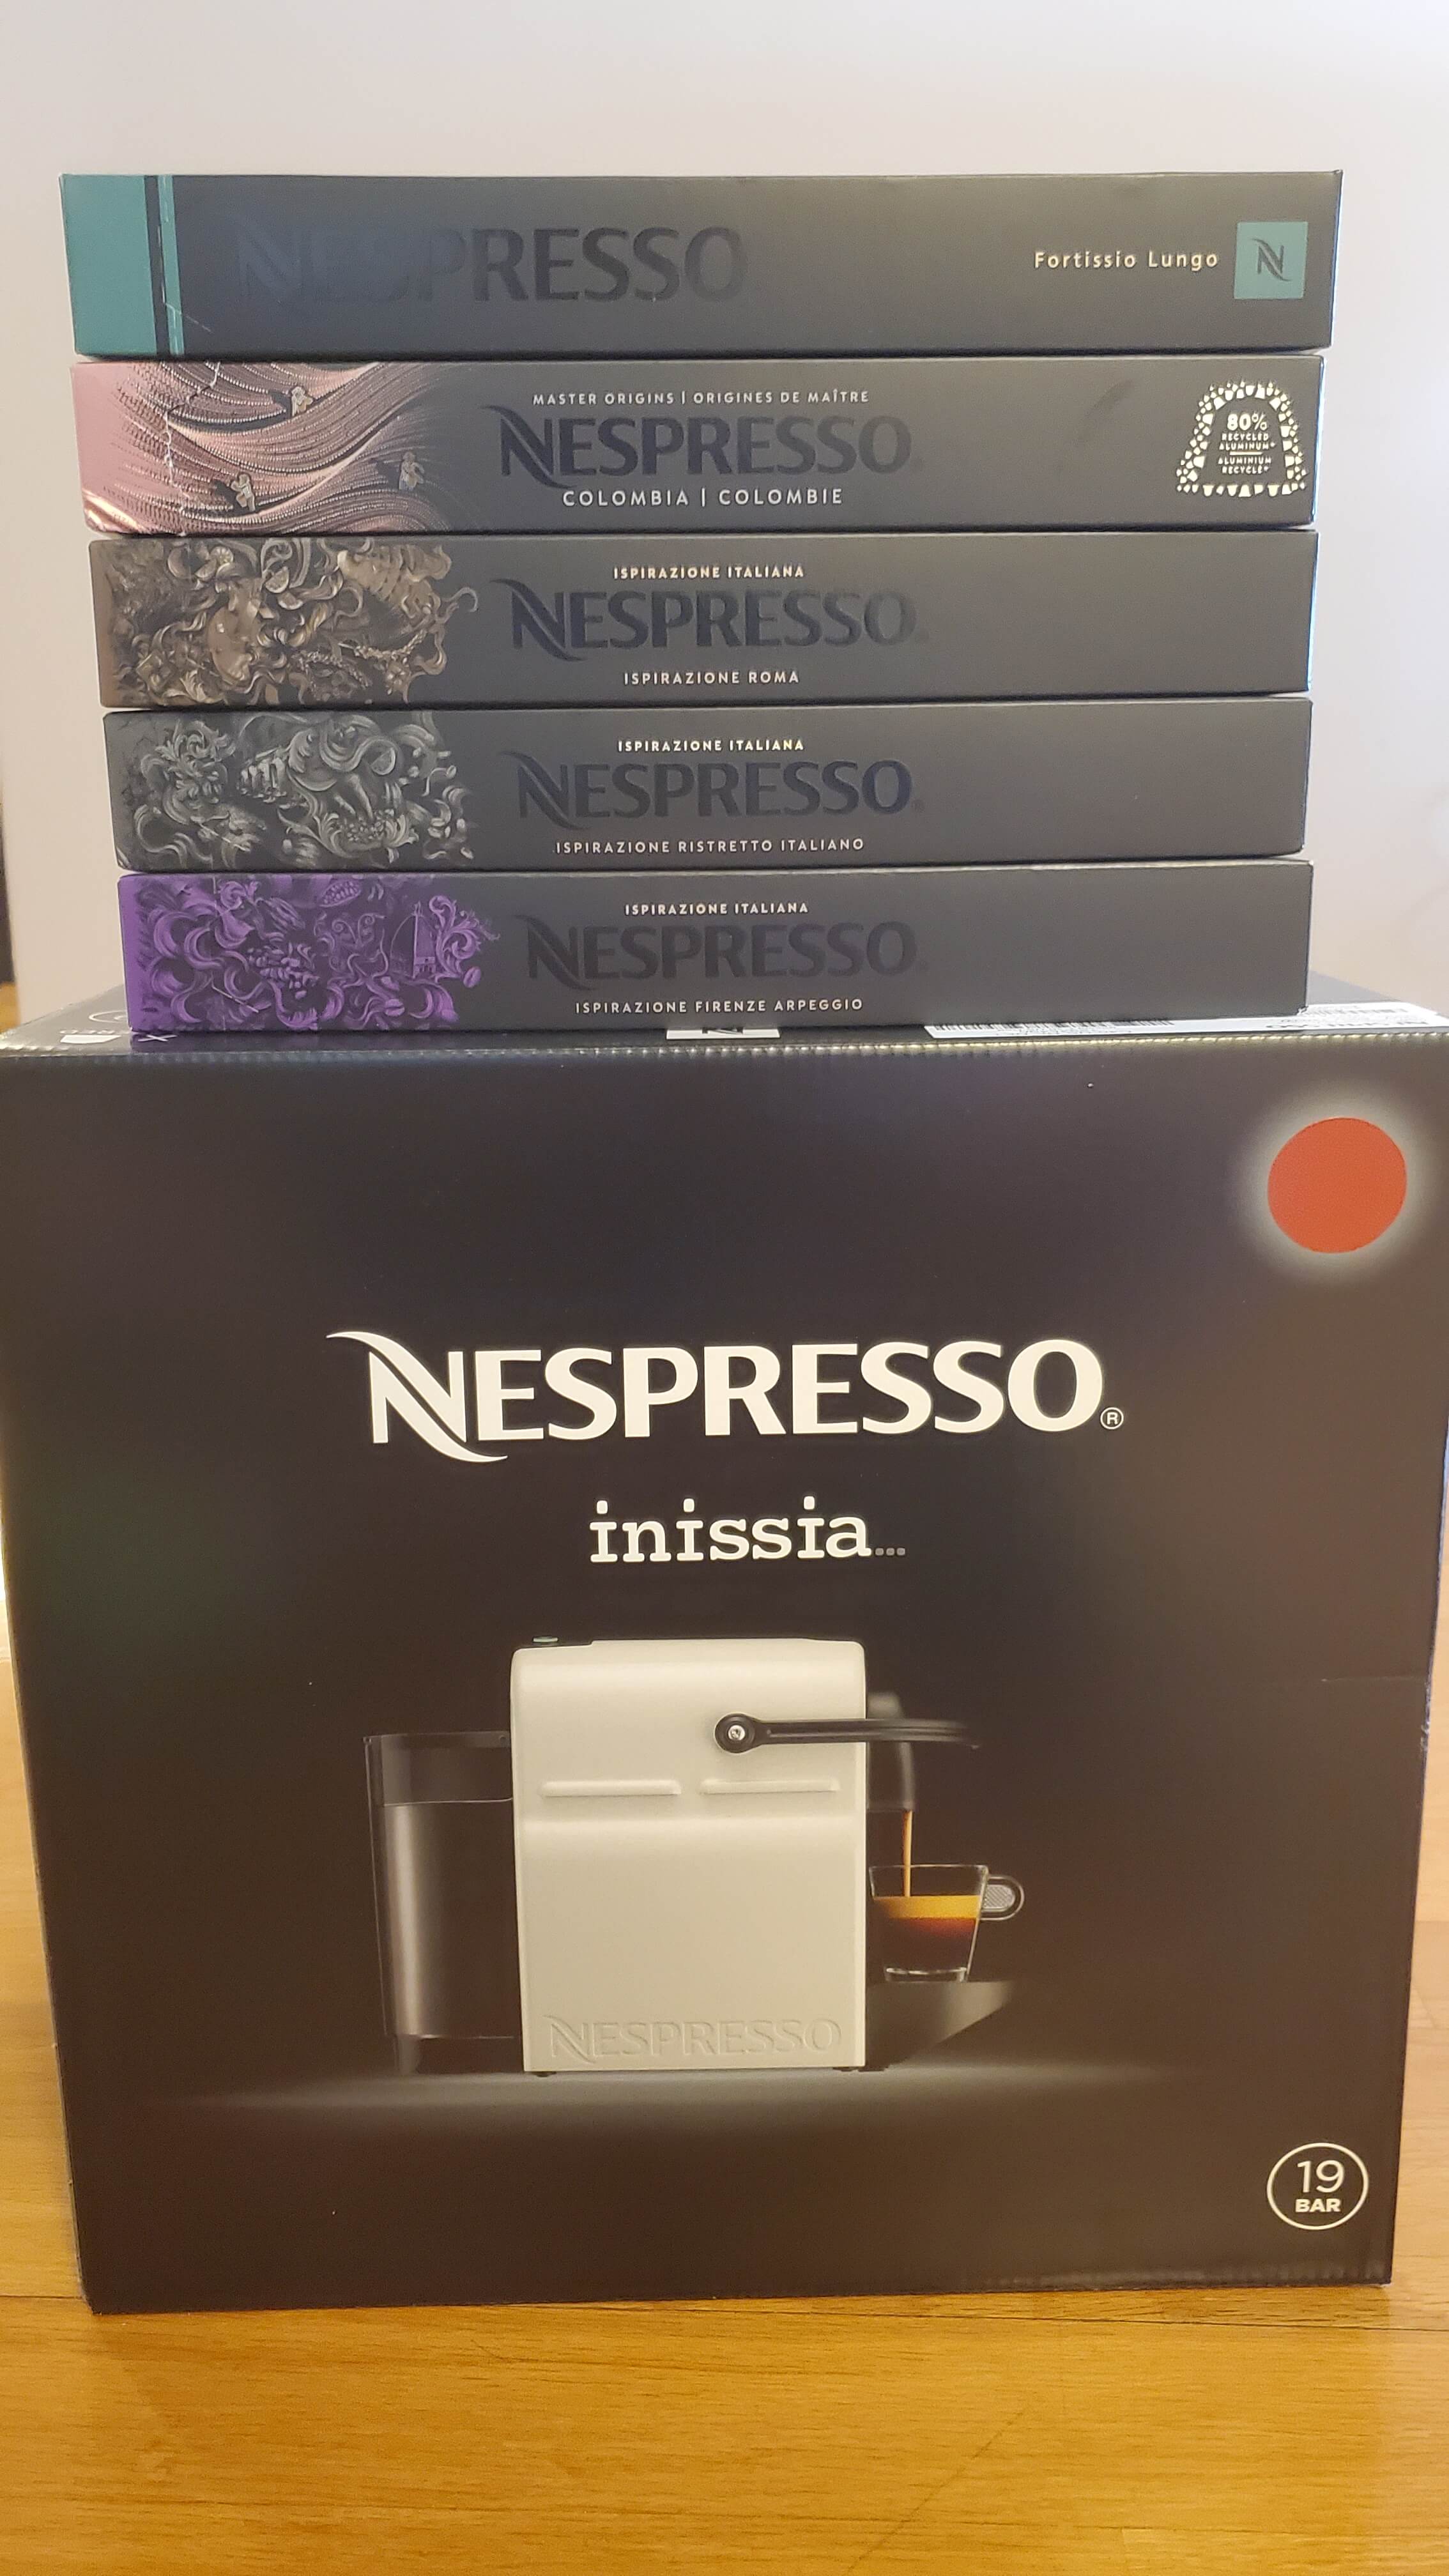 nespresso (1).jpg